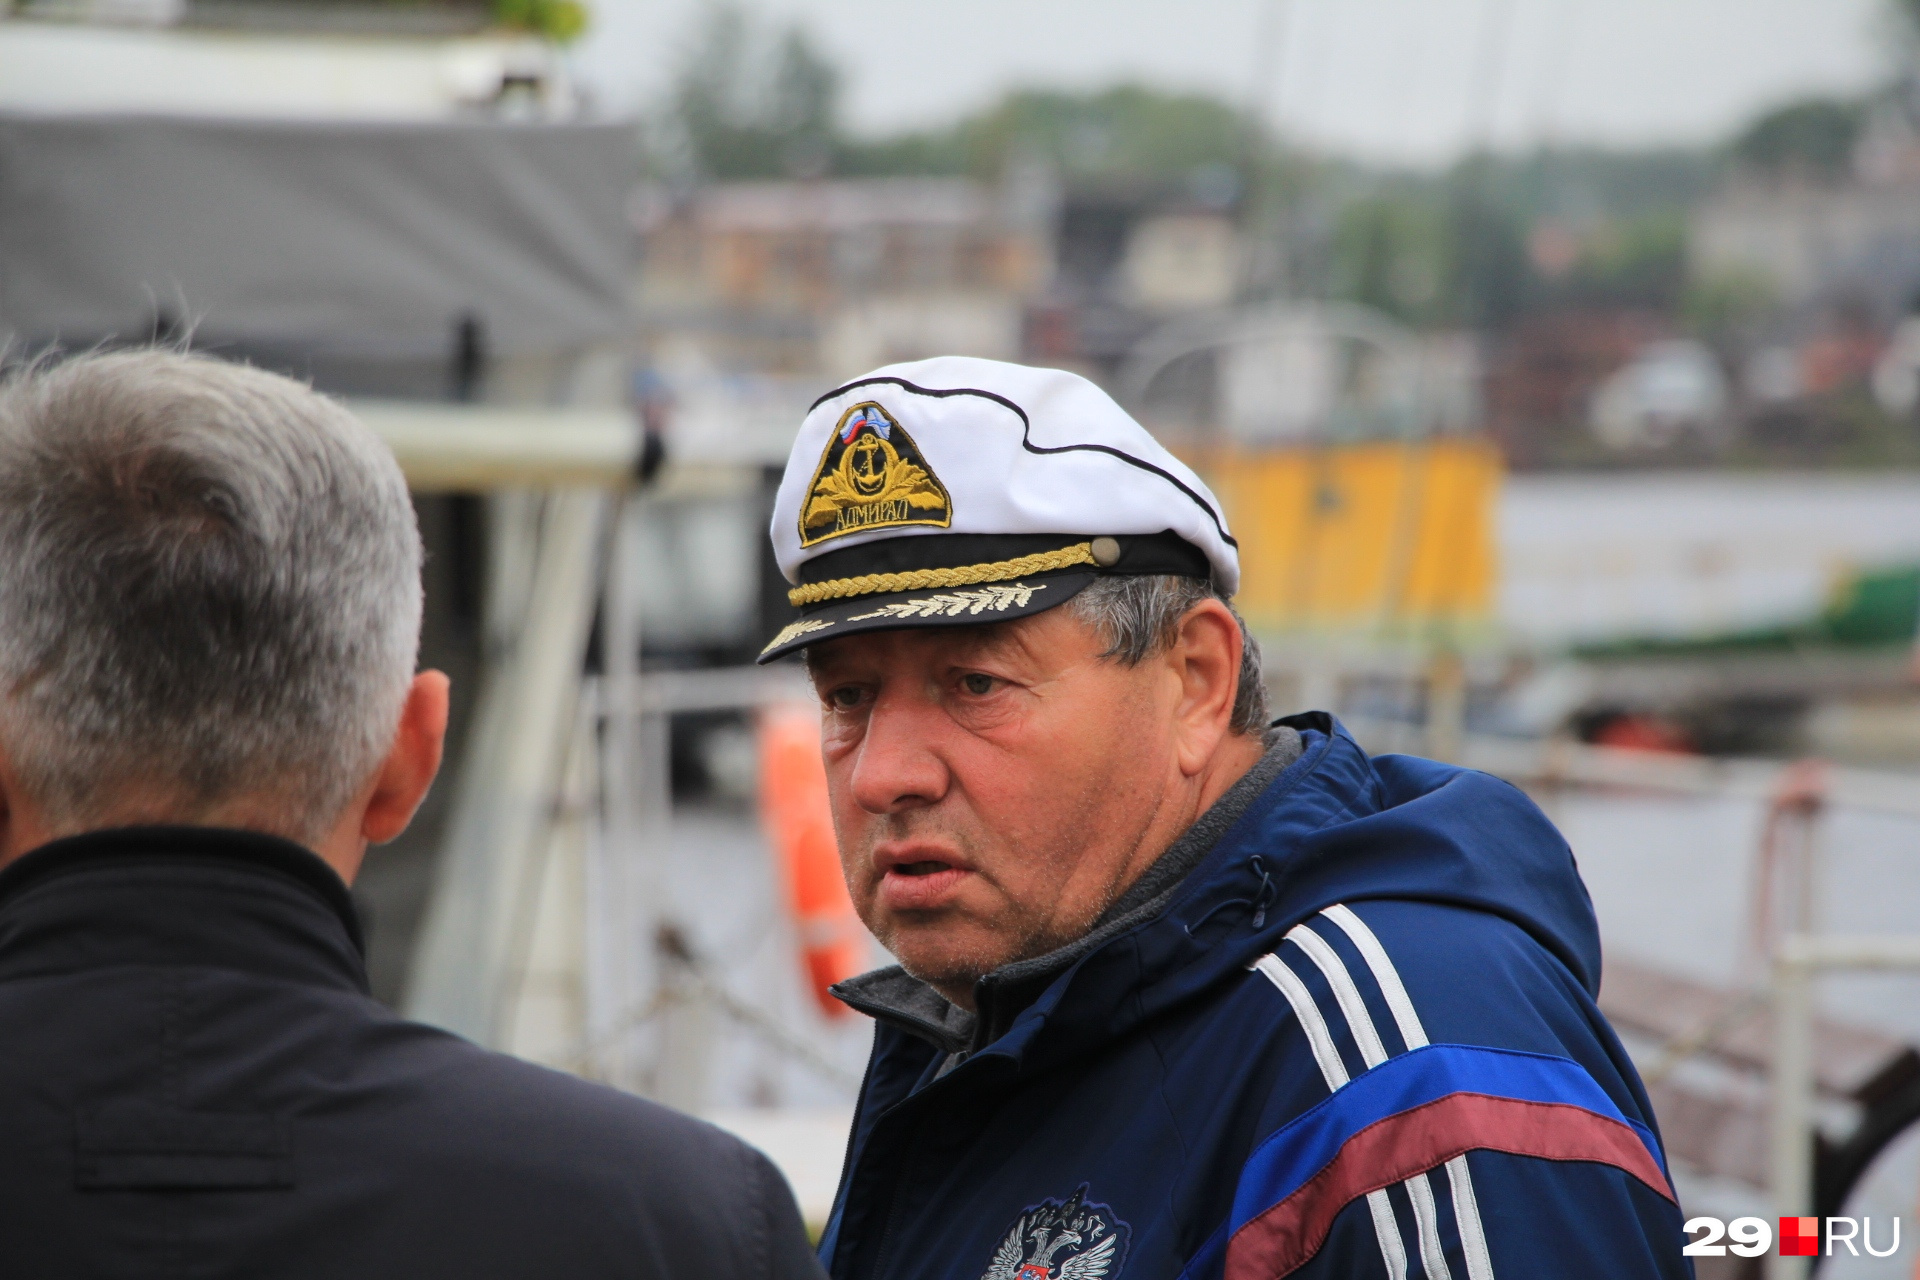 А вот и сам «капитан», говорит, что путешествие по Северной Двине из Великого Устюга в Архангельск — первое и самое масштабное